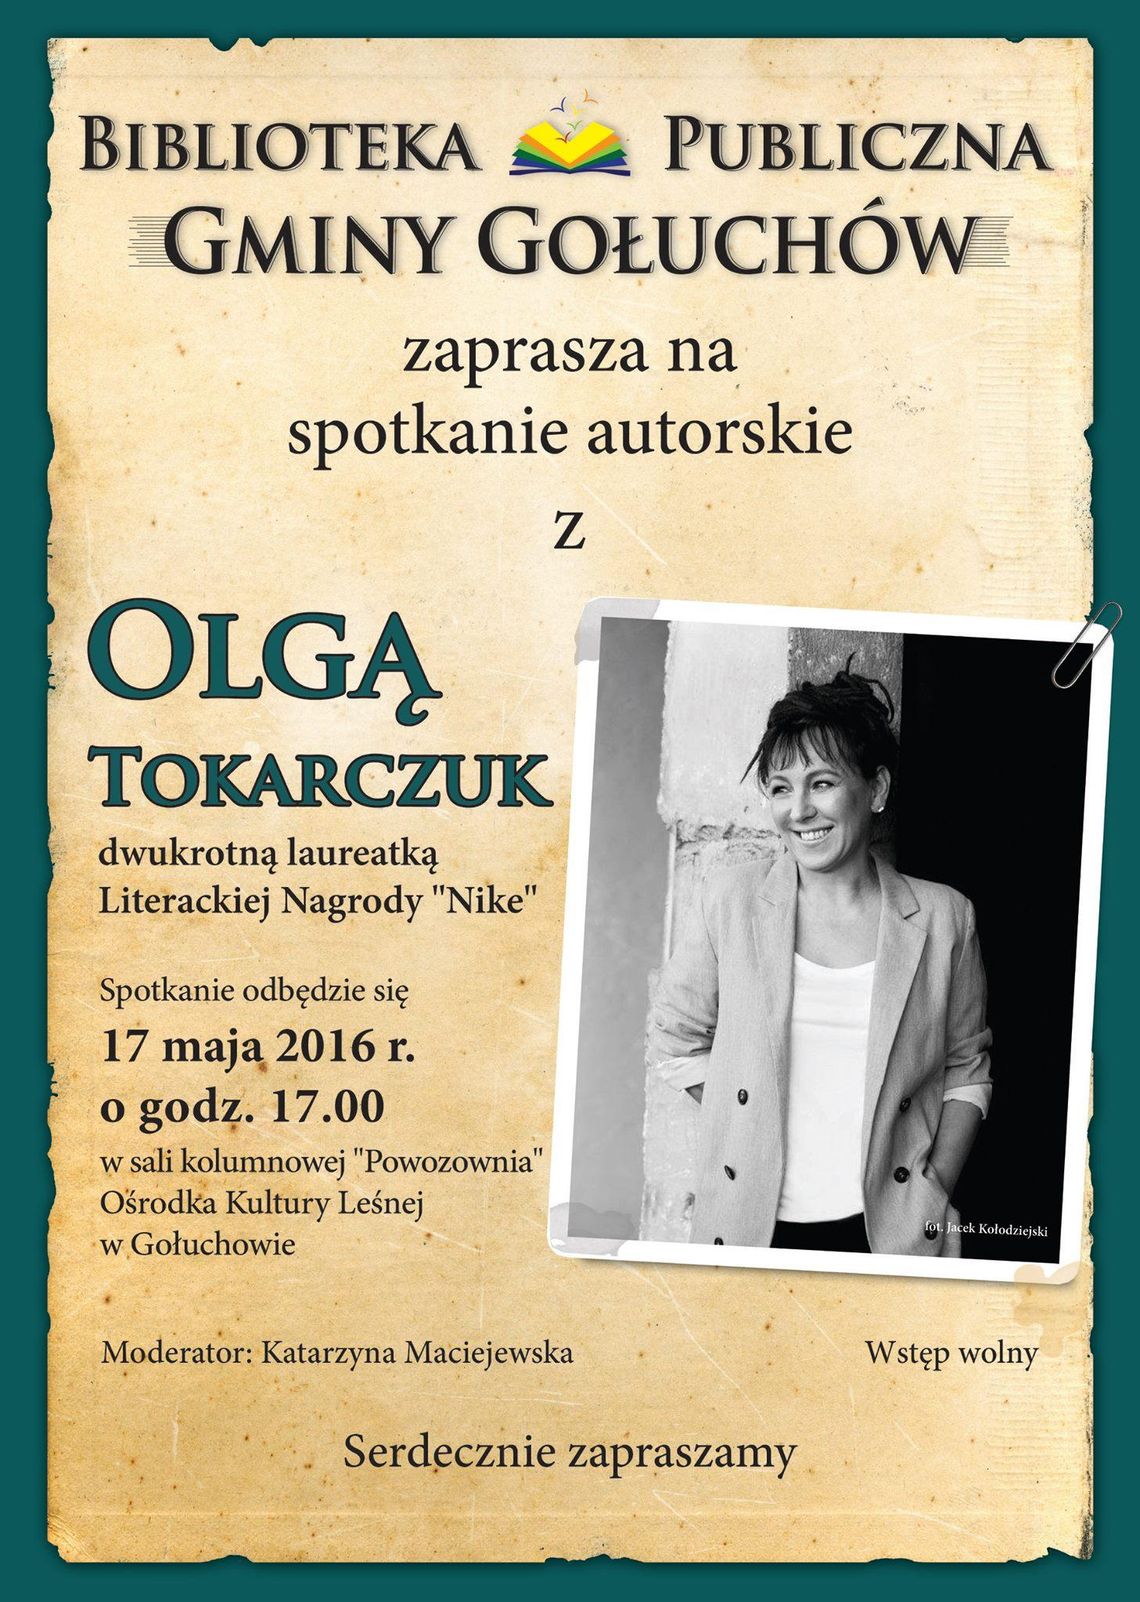 Olga Tokarczuk odwiedzi Gołuchów